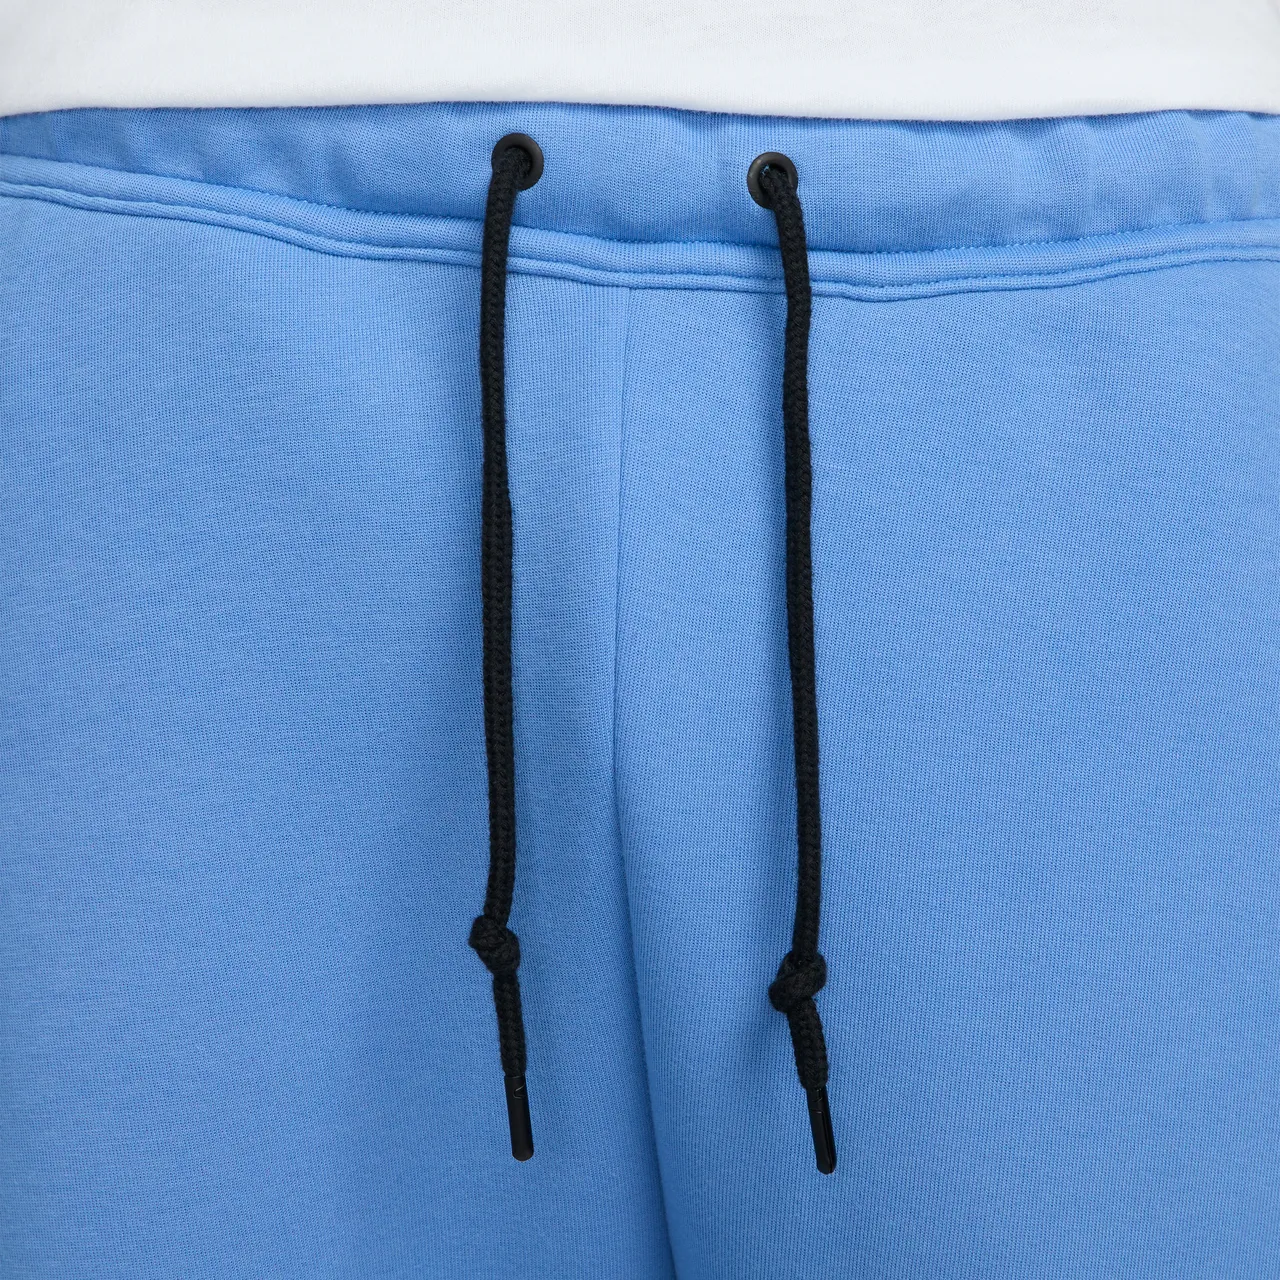 Nike Sportswear Tech Fleece Men's Joggers - Blue